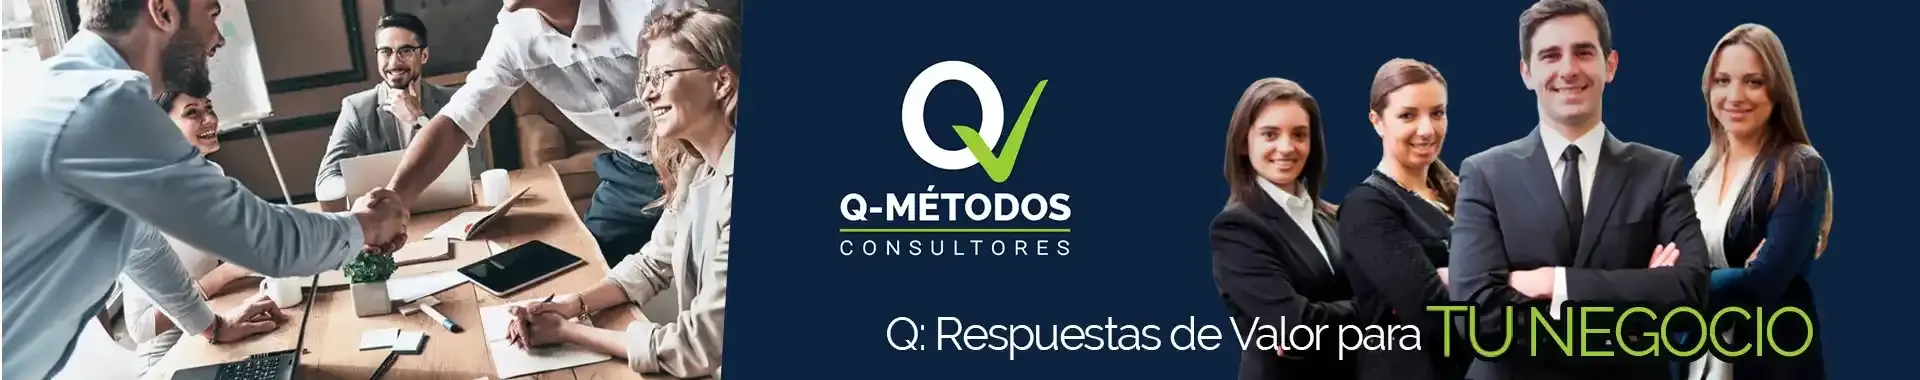 Imagen 1 del perfil de Q-Métodos Consultores